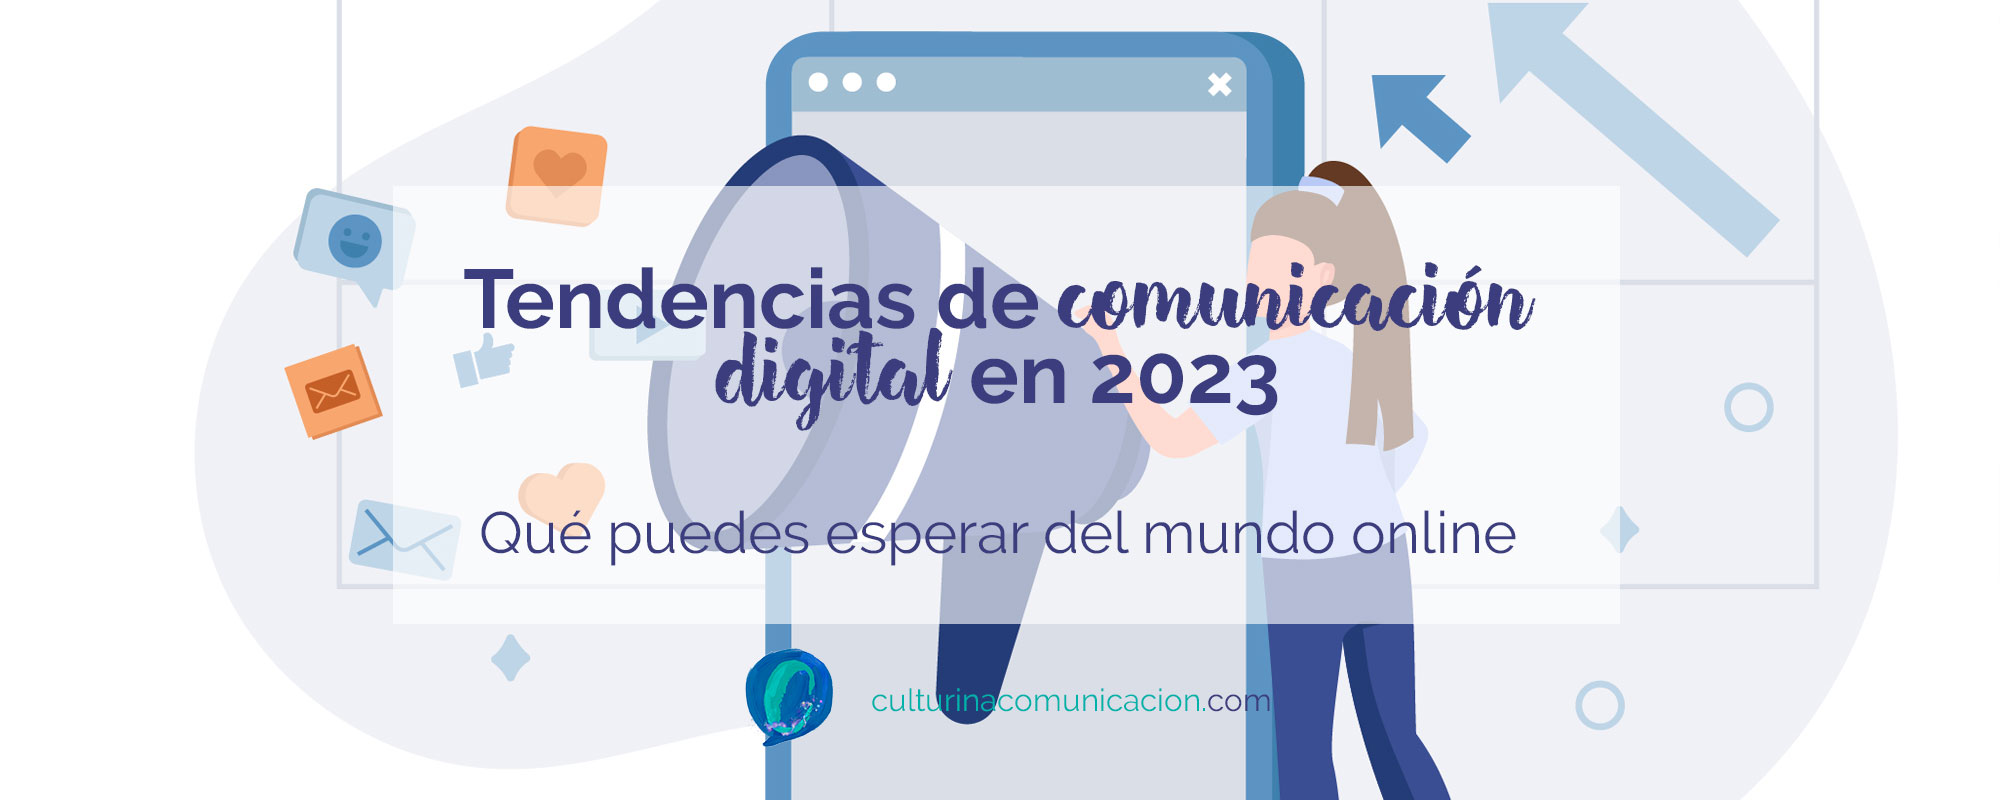 tendencias en comunicación digital en 2023, culturina comunicación